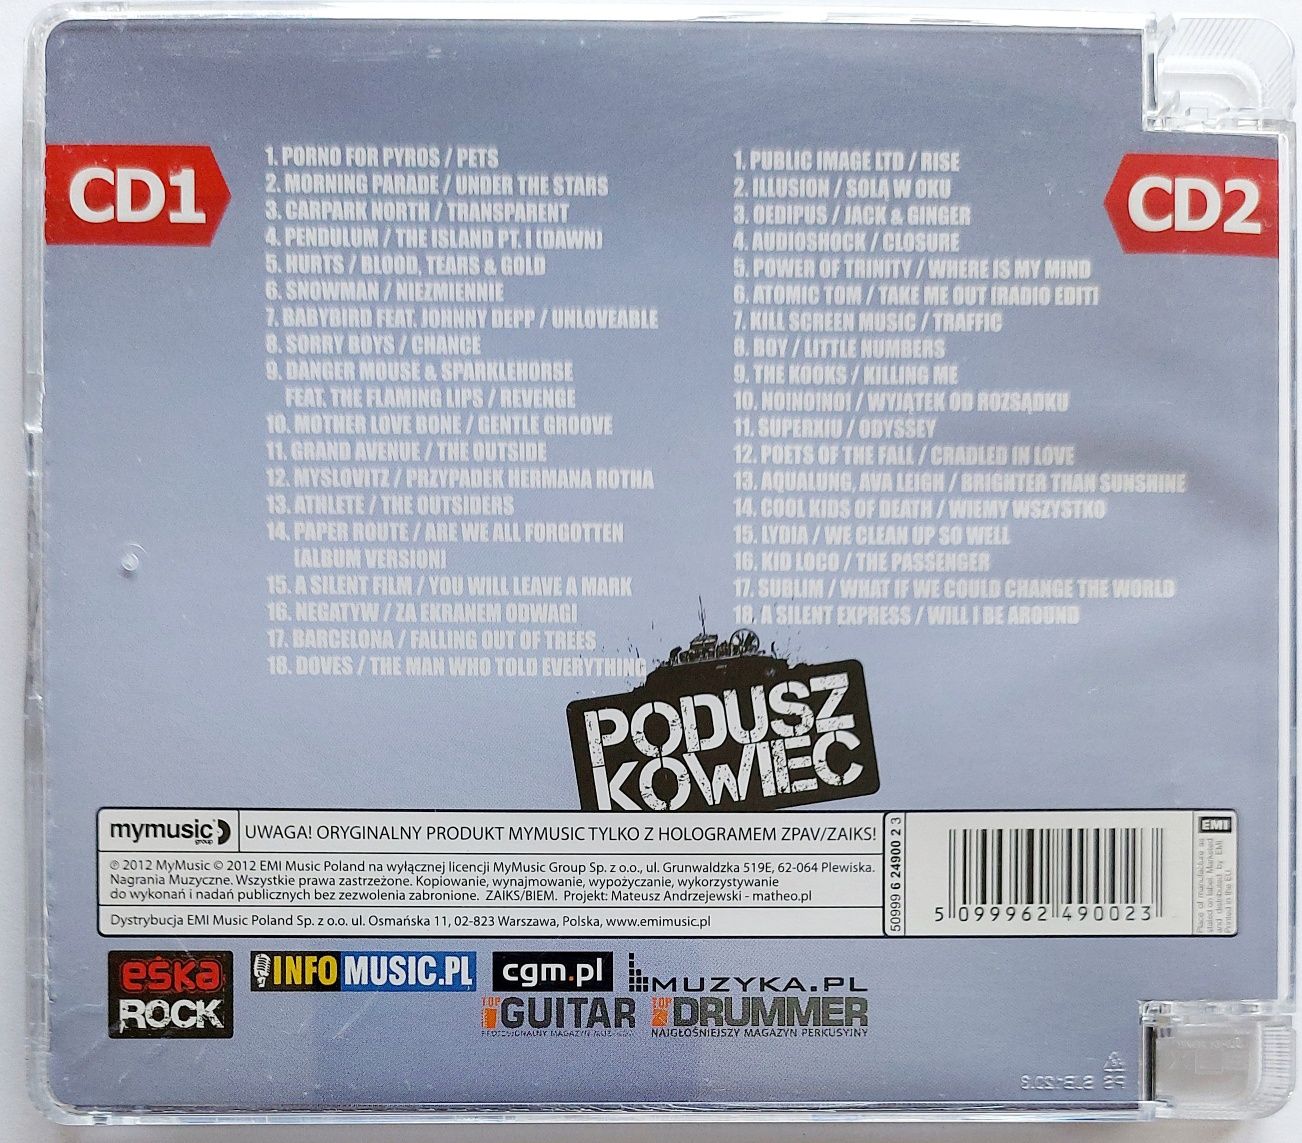 Eska Rock Poduszkowiec 2CD 2012r Myslovitz Negatyw Illusion Oedipus